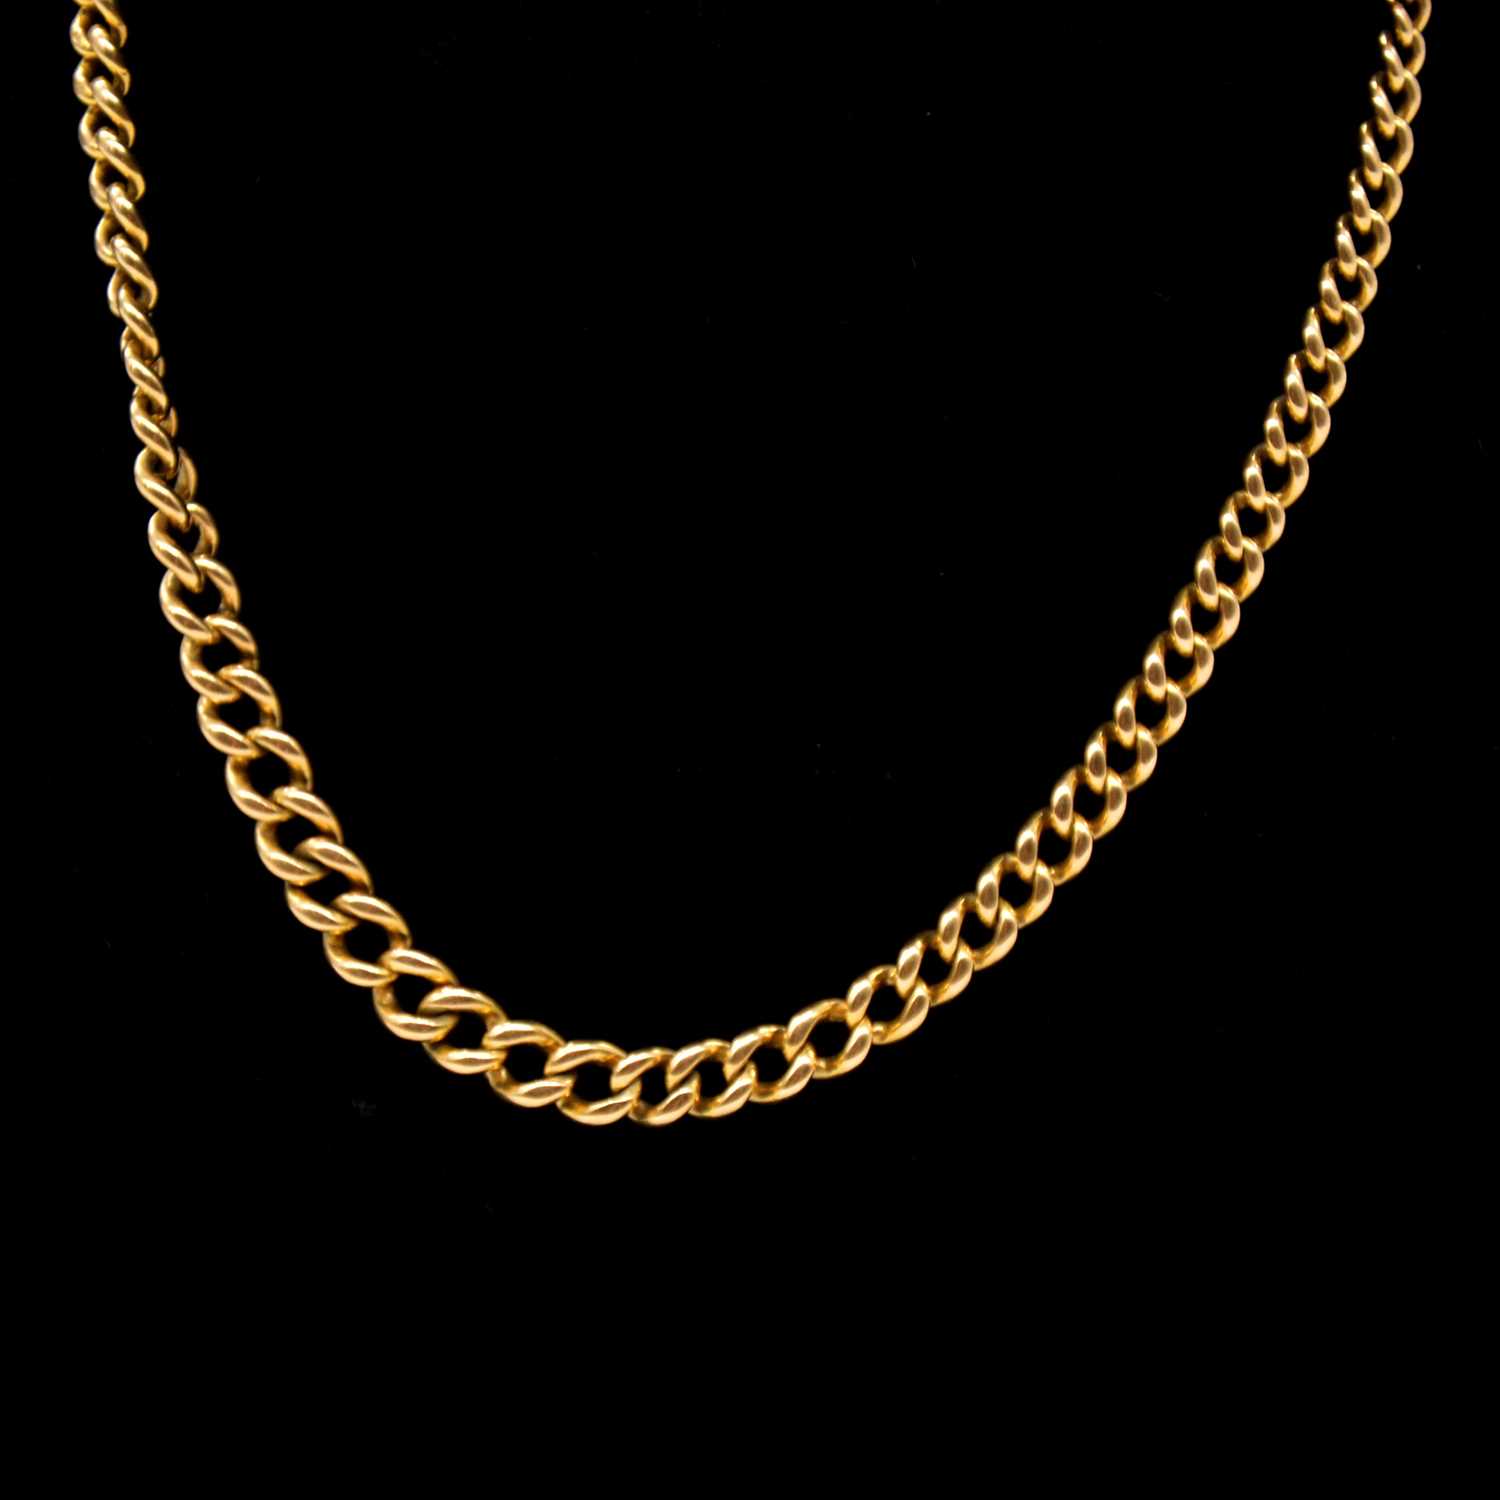 An 18 carat yellow gold single Albert watch chain.